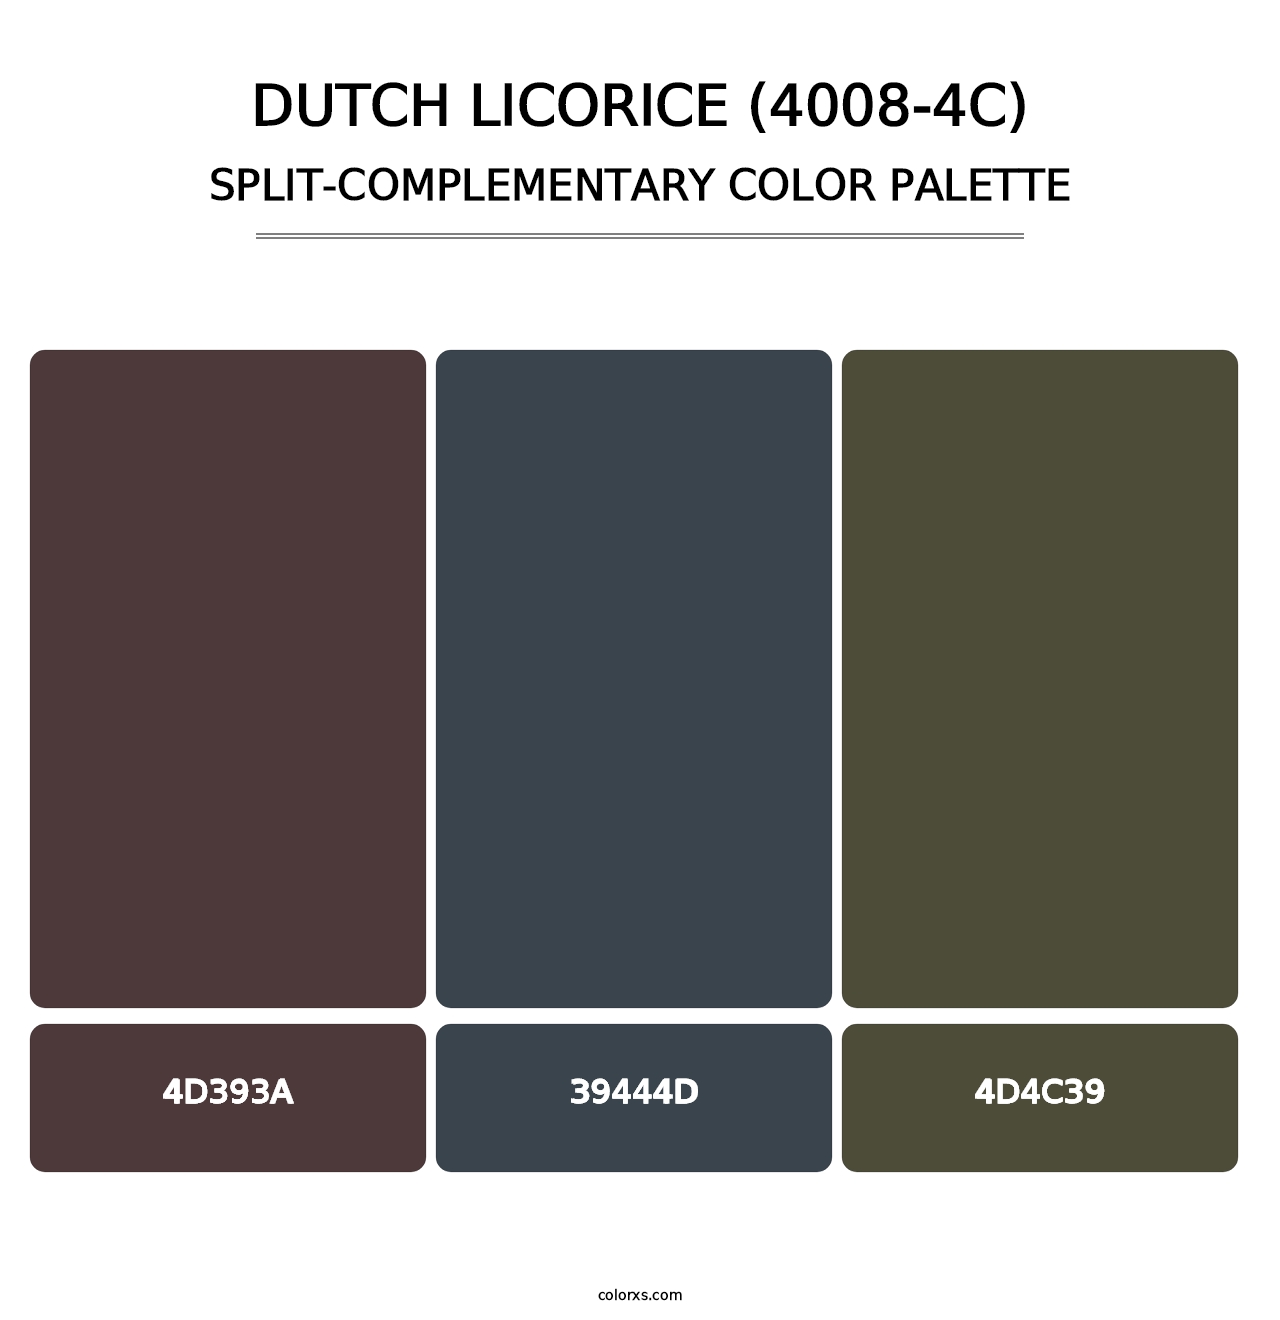 Dutch Licorice (4008-4C) - Split-Complementary Color Palette